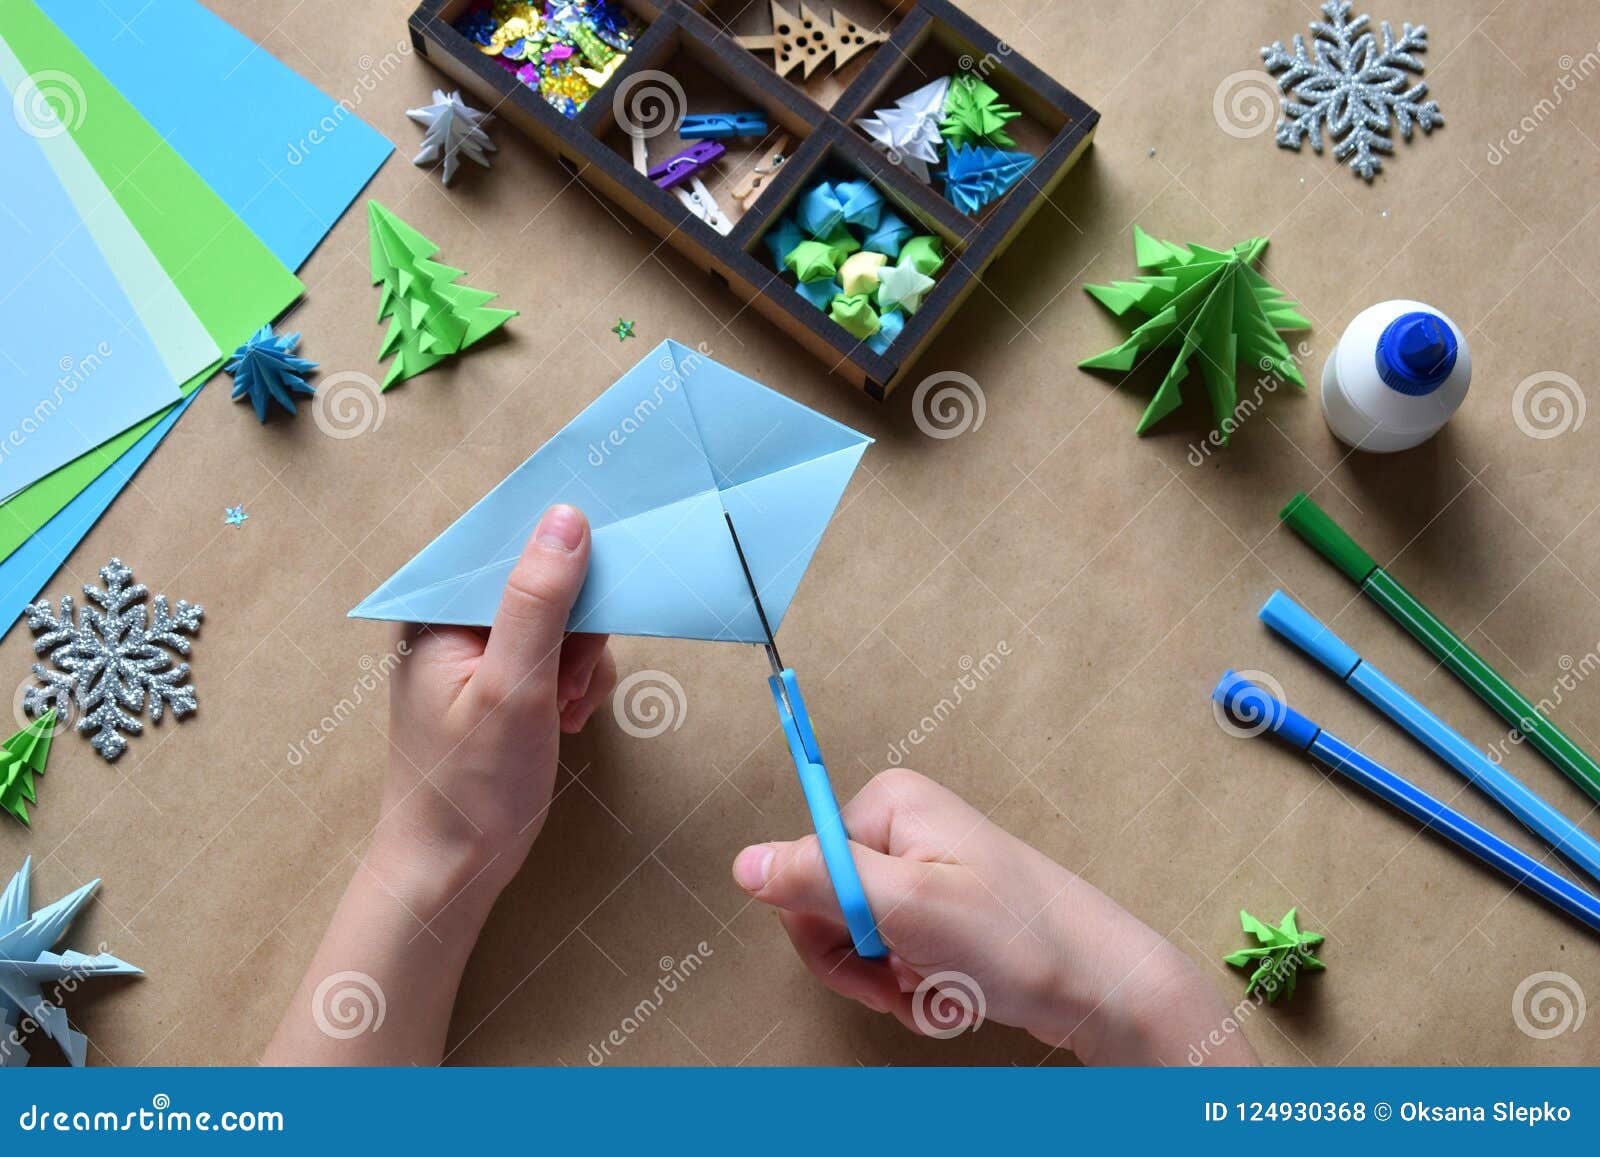 Книжка-игрушка Оригами. Новый год. Шепелевич А